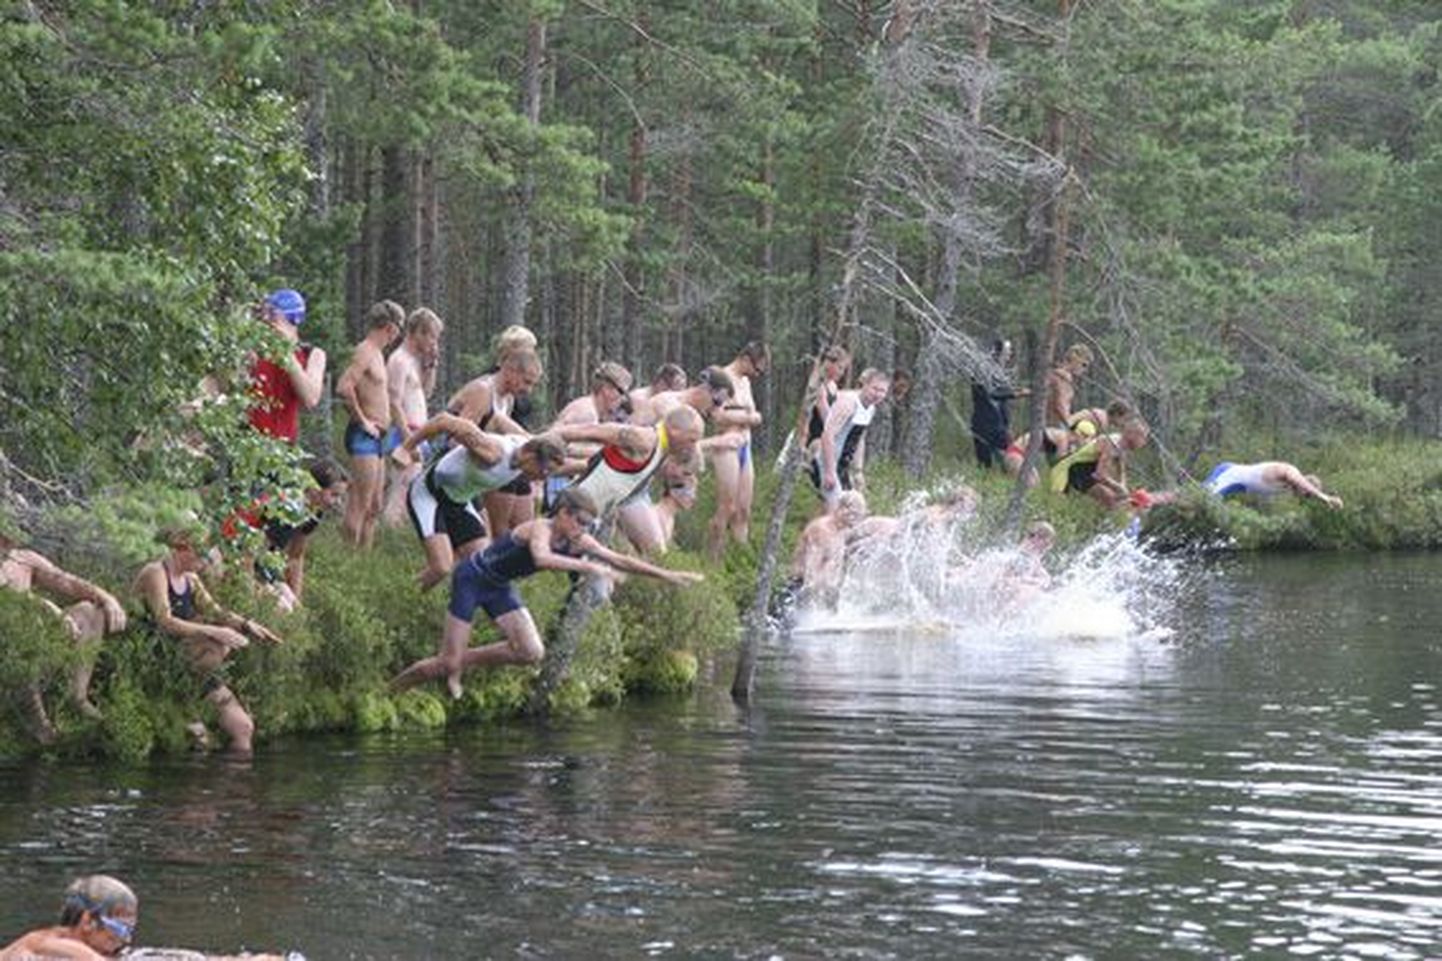 2008. aastal toimus XX Tudu triatlon. Stardipauk oli antud, sportlased hüppasid vette. Nüüd on järg XV Tudu traitloni käes.